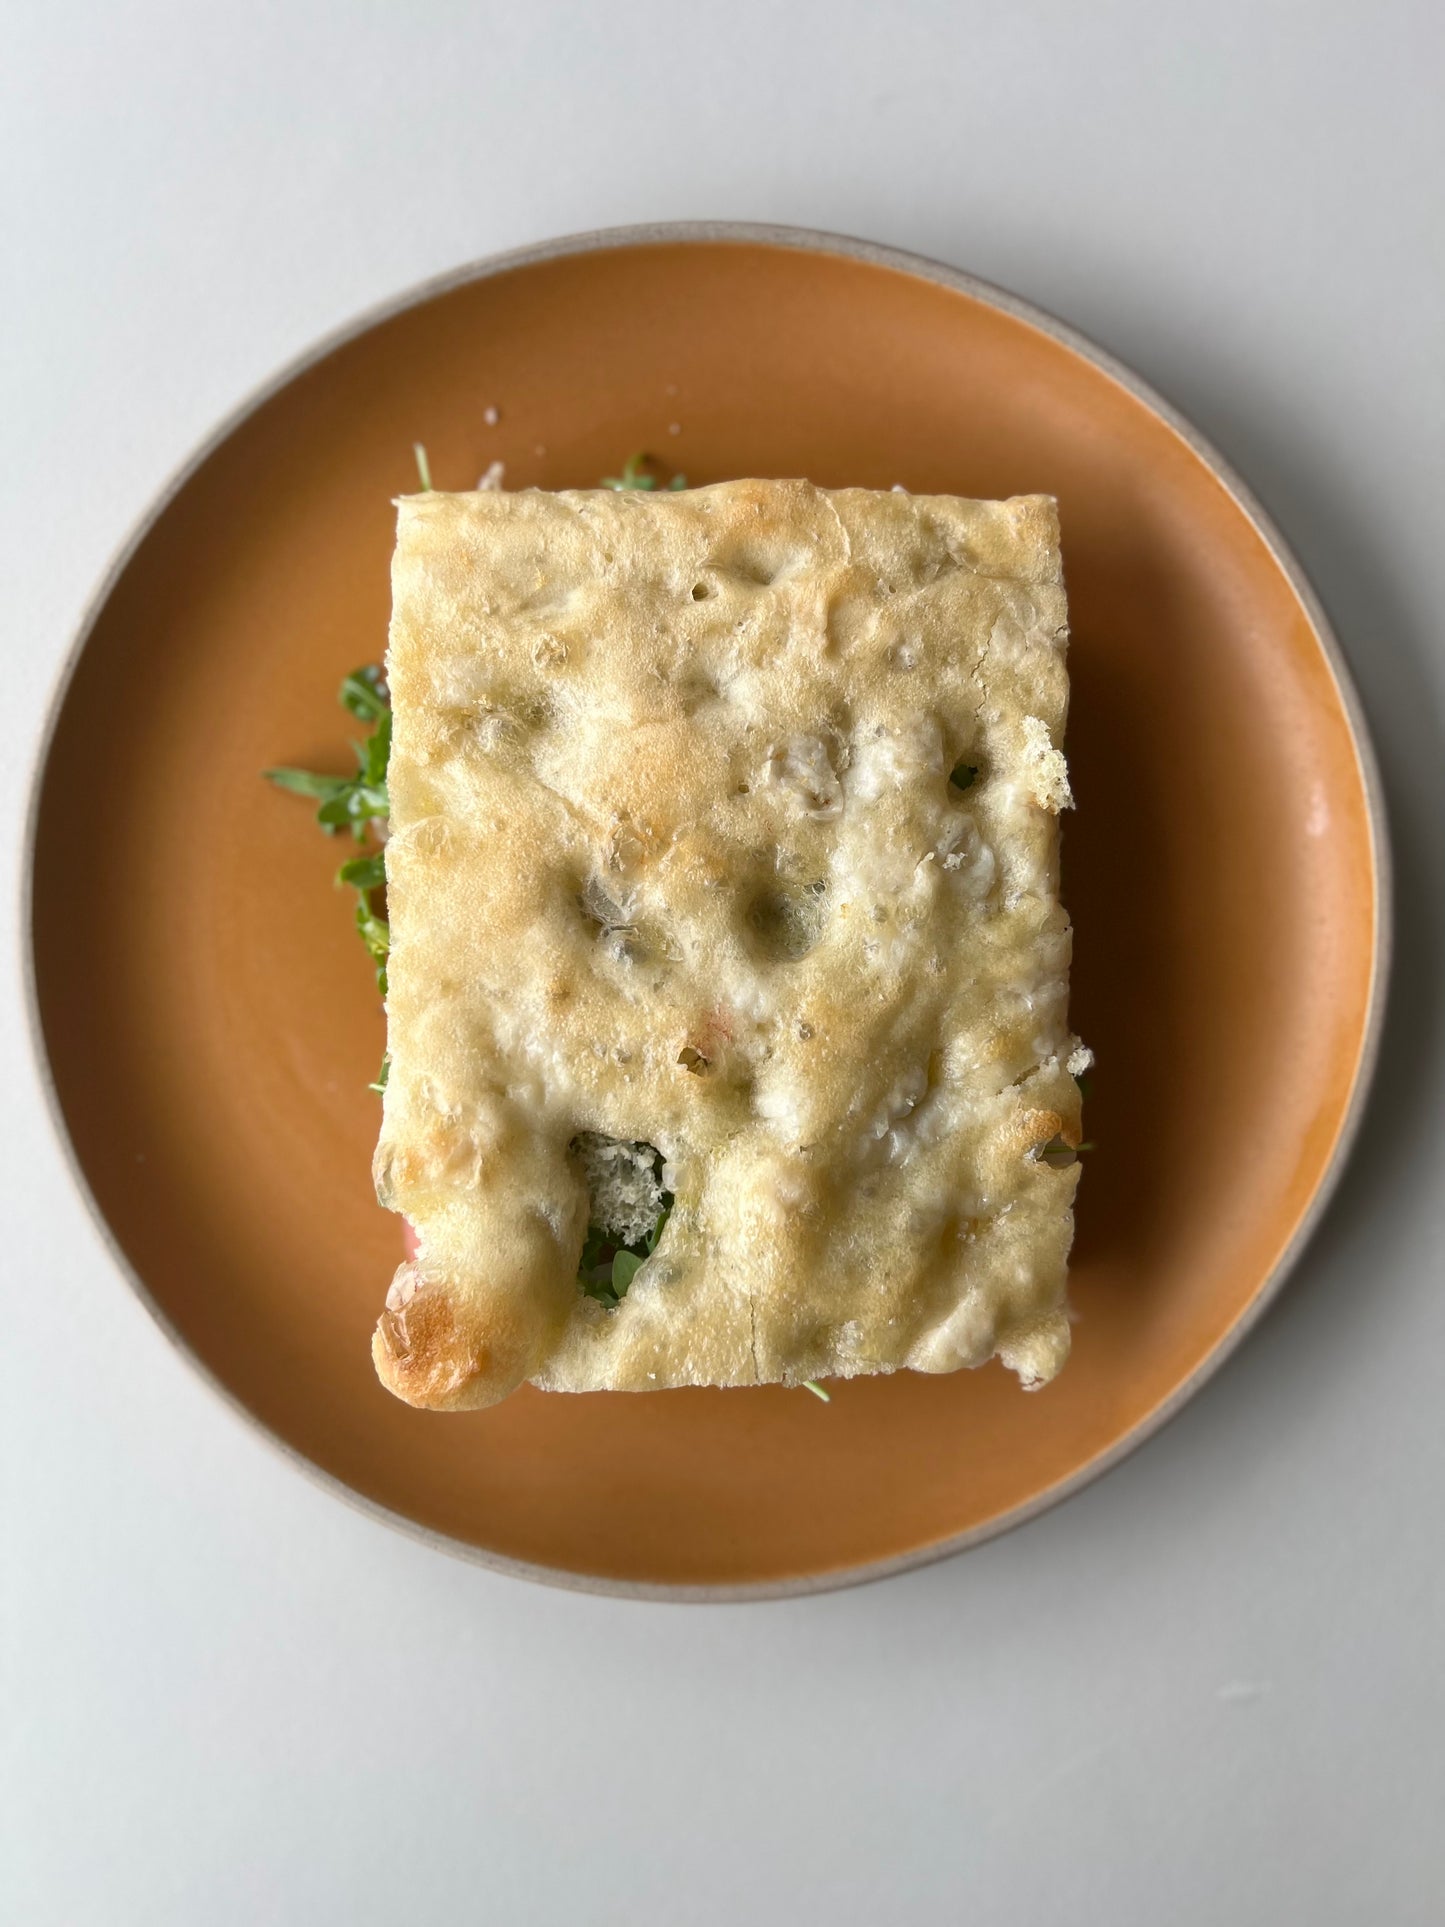 Genoa Focaccia sandwich with pistachio mortadella